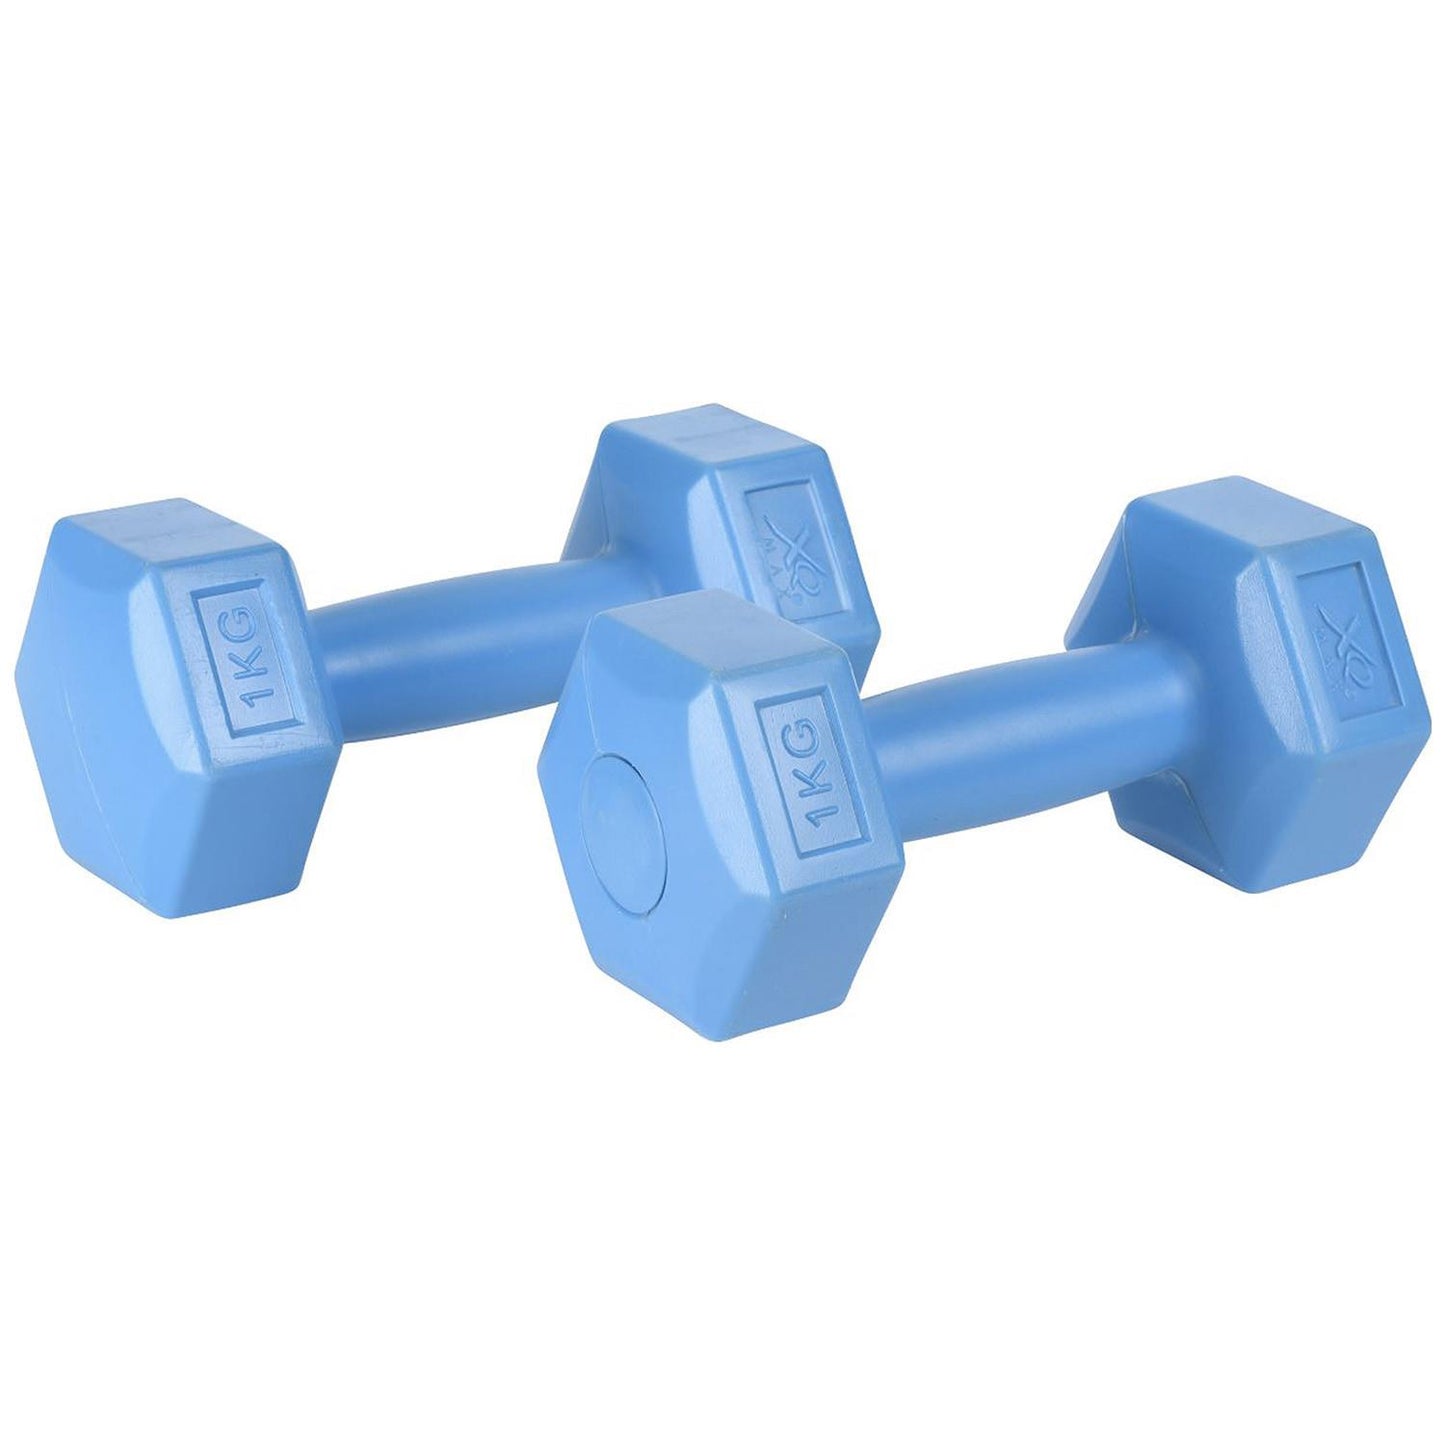 XQ Max Dumbbell Set Exercise Health Fitness 0.5kg 1kg 2kg